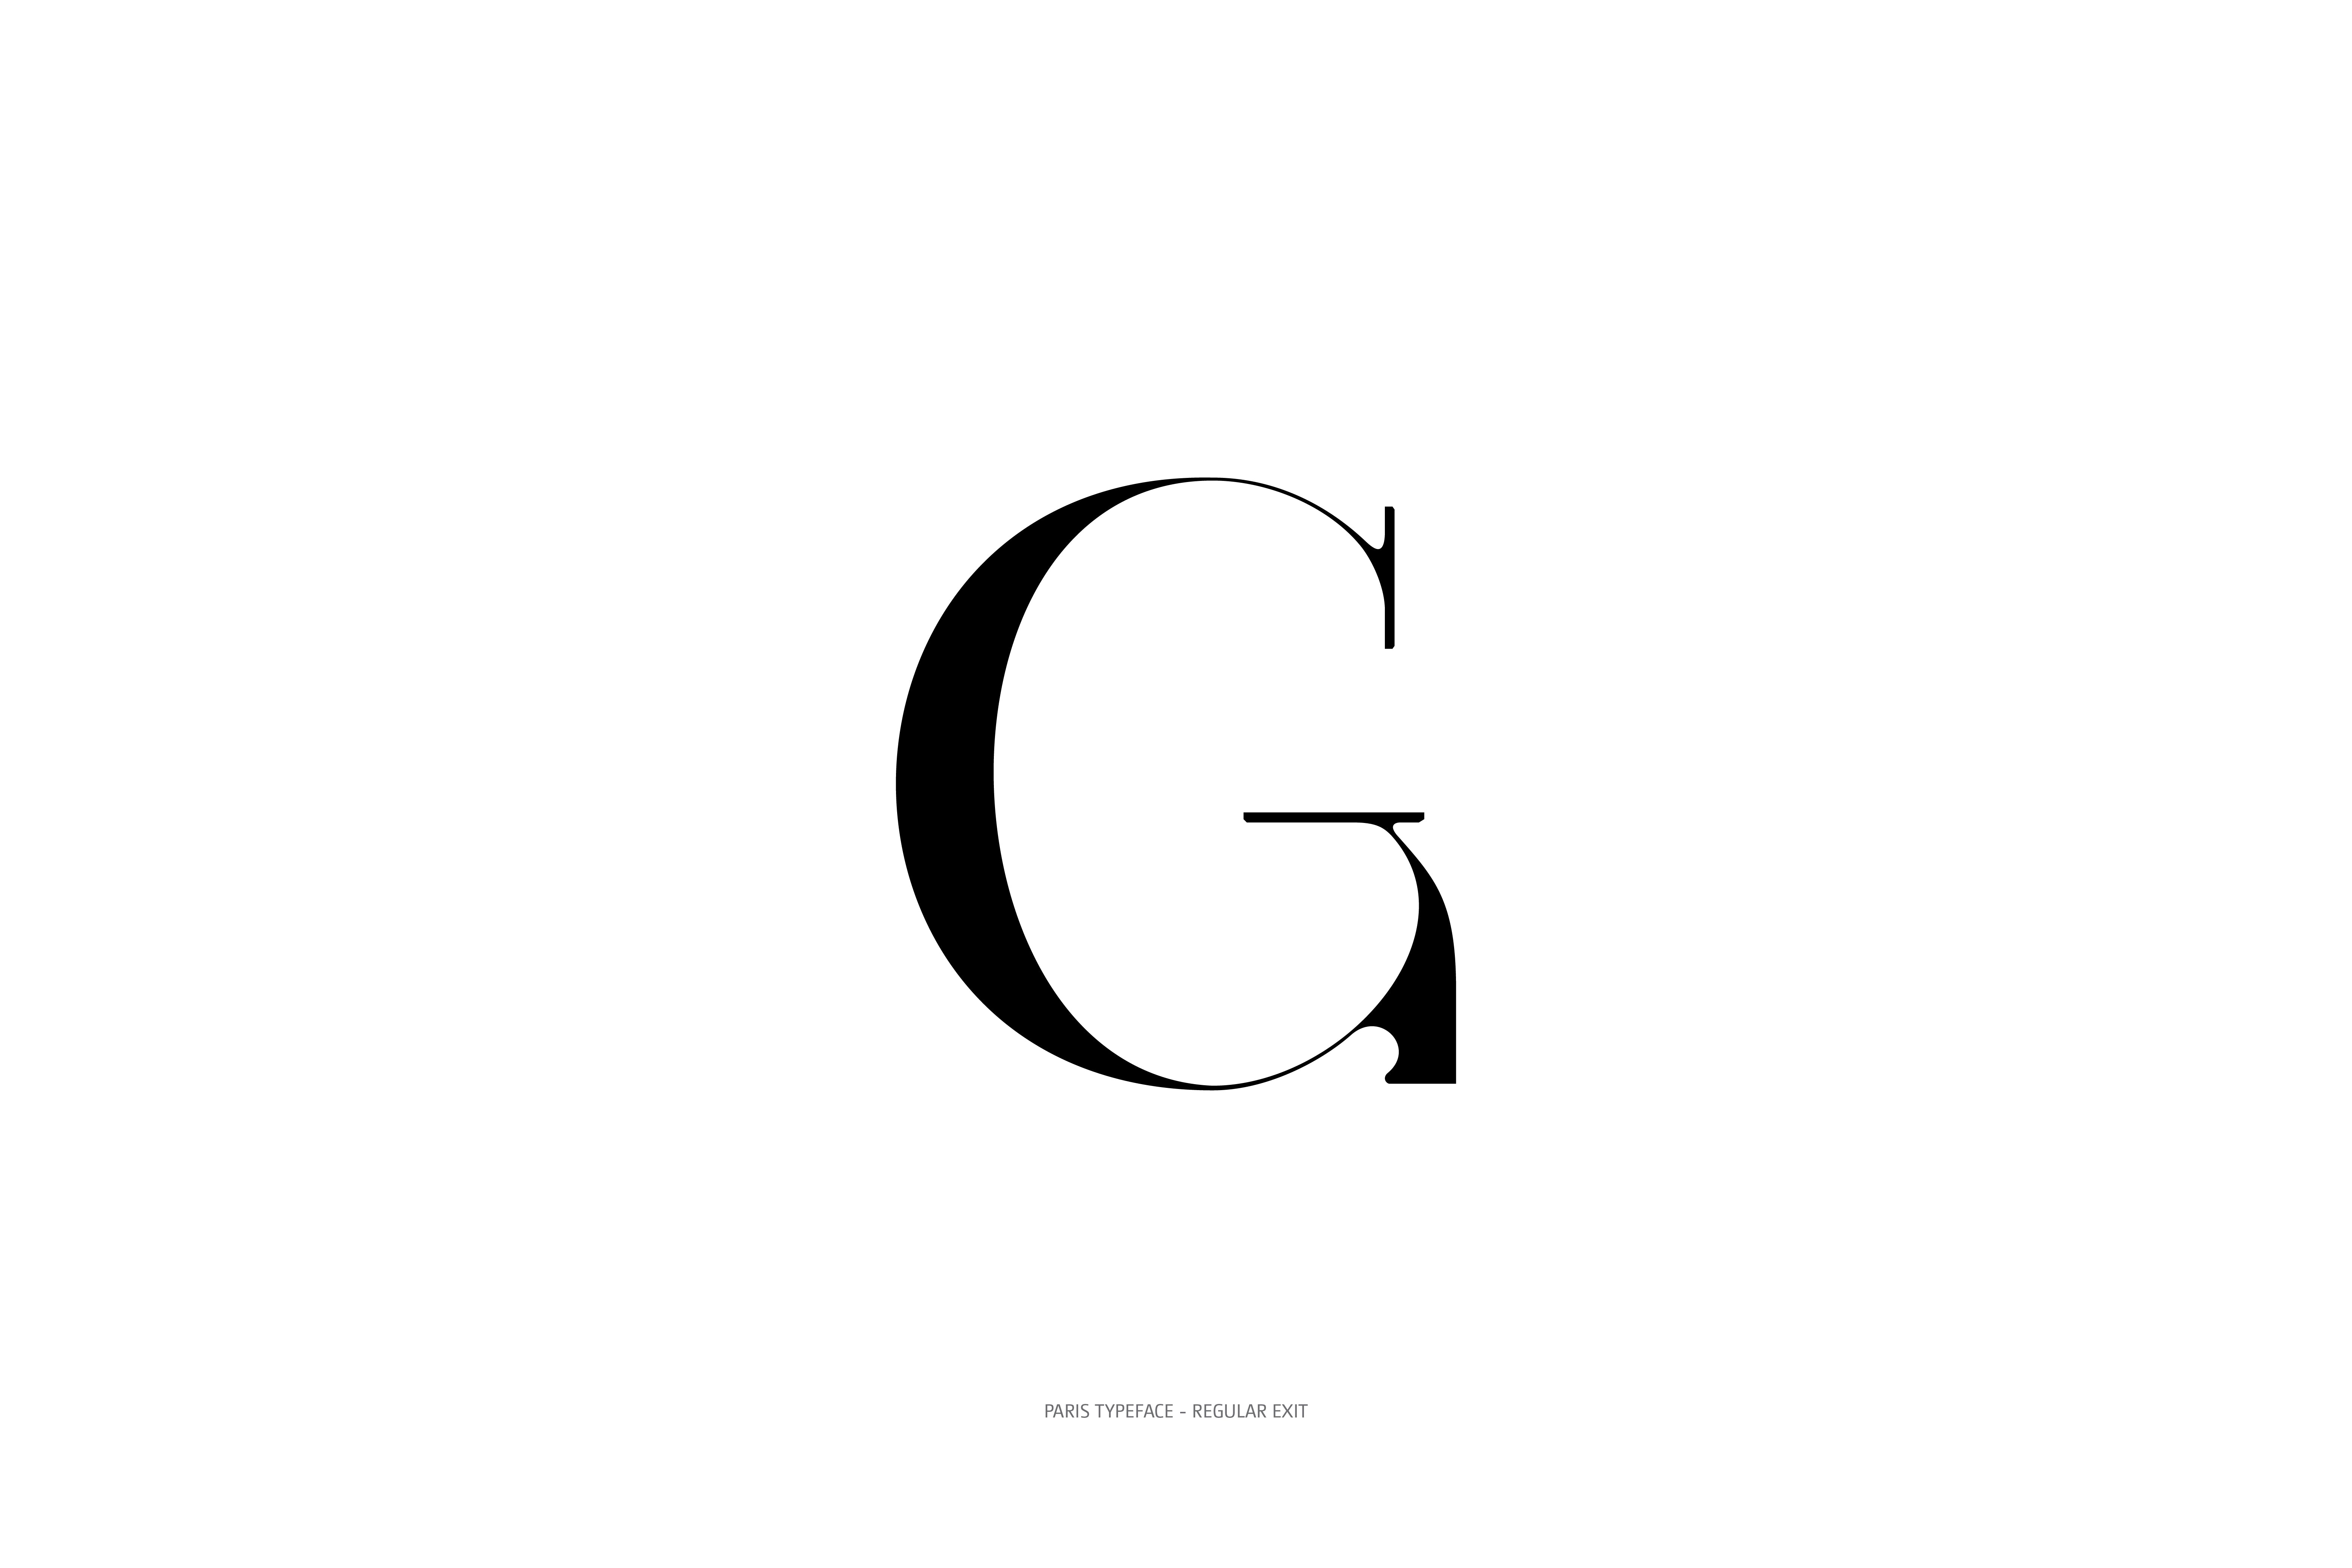 Paris Typeface Regular Exit G